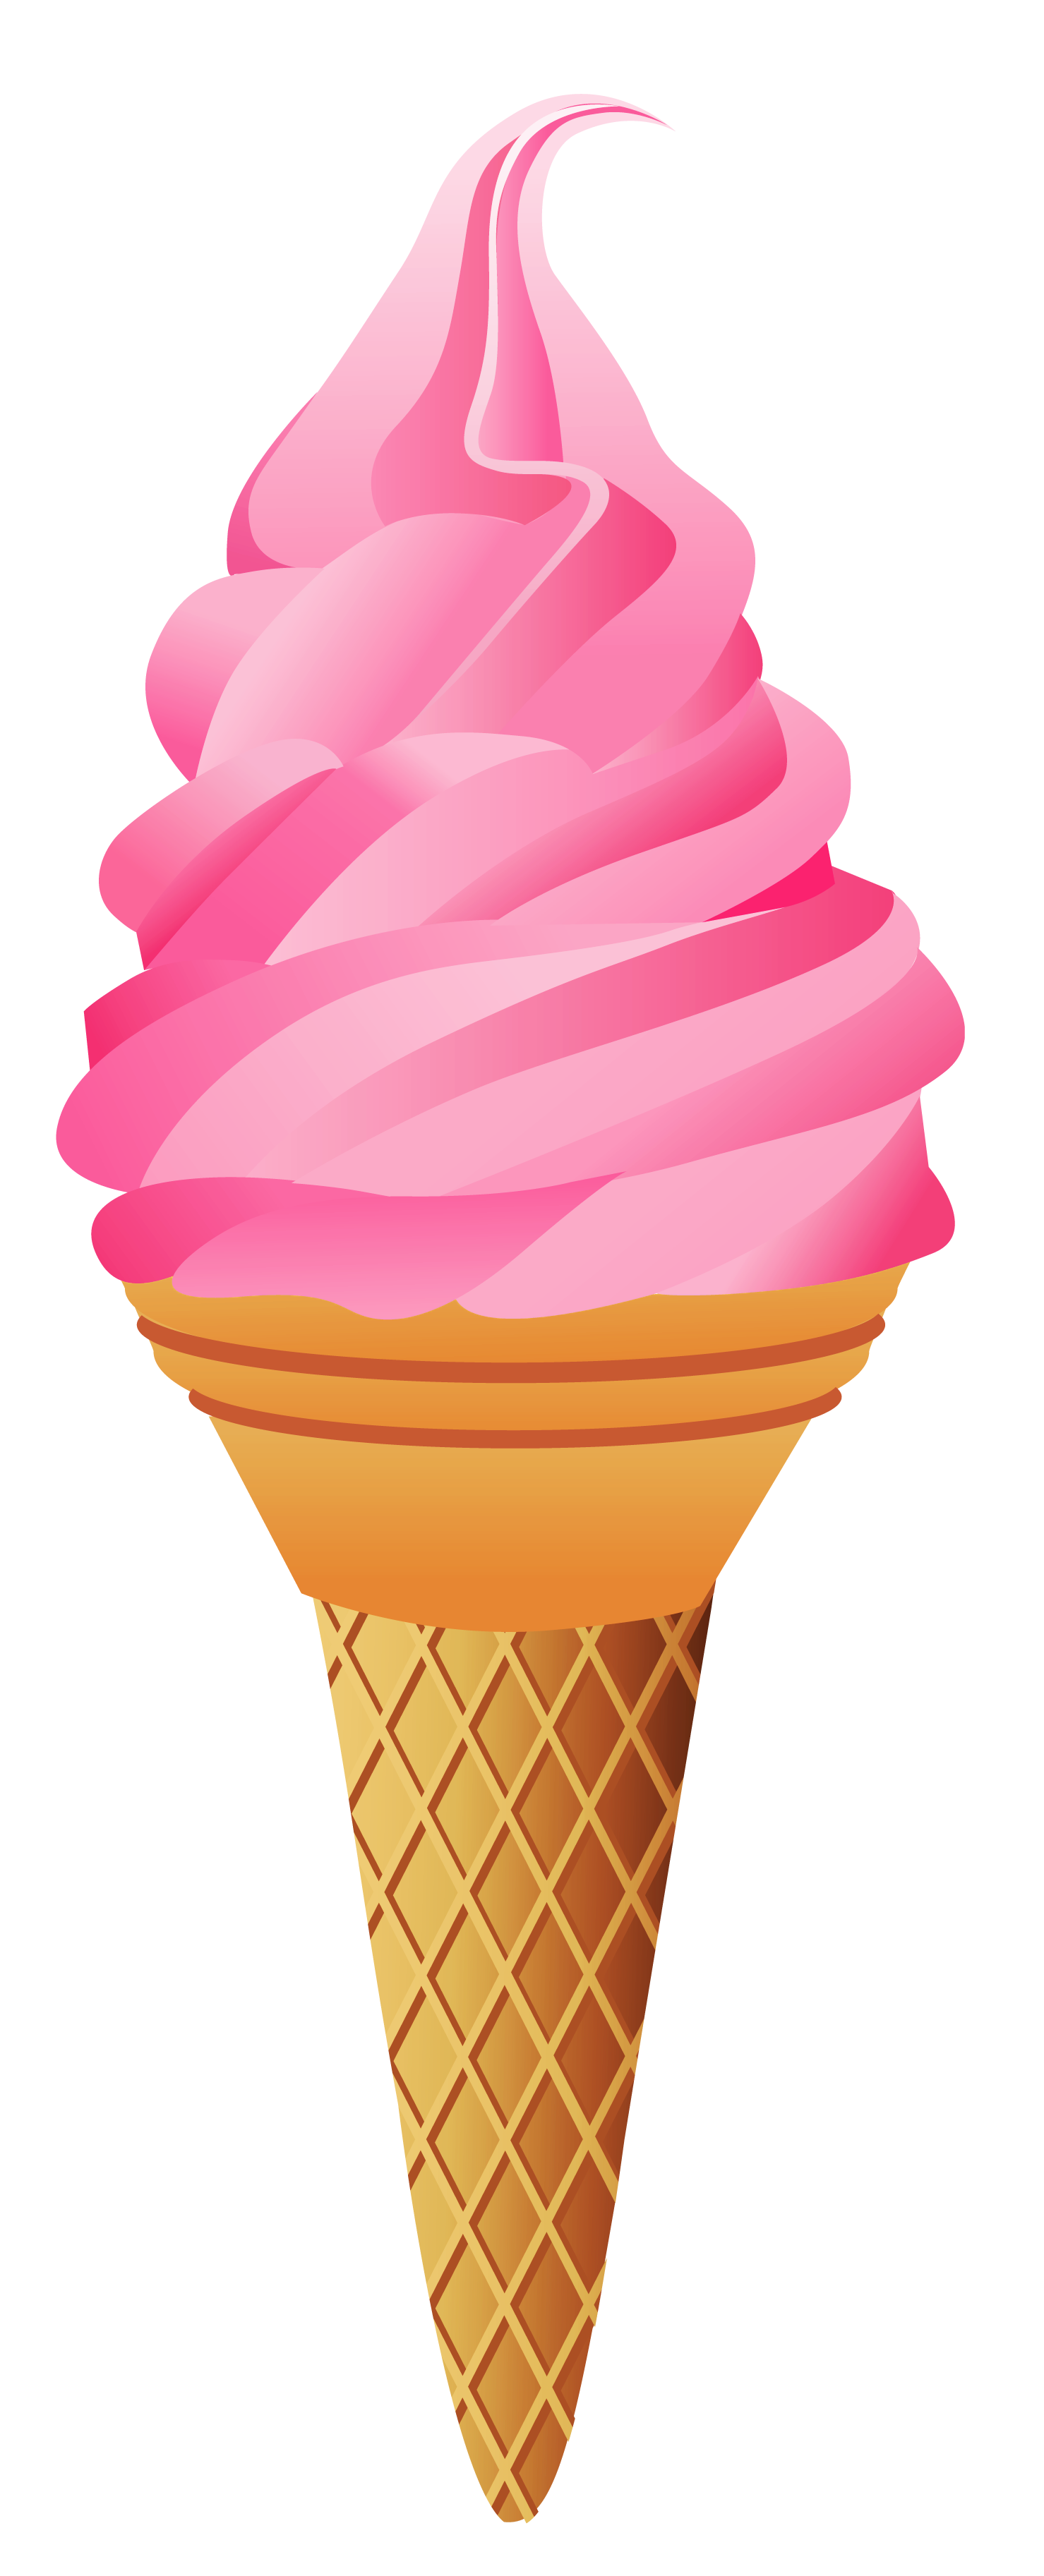 Ice cream cone ice cream no c - Icecream Clipart